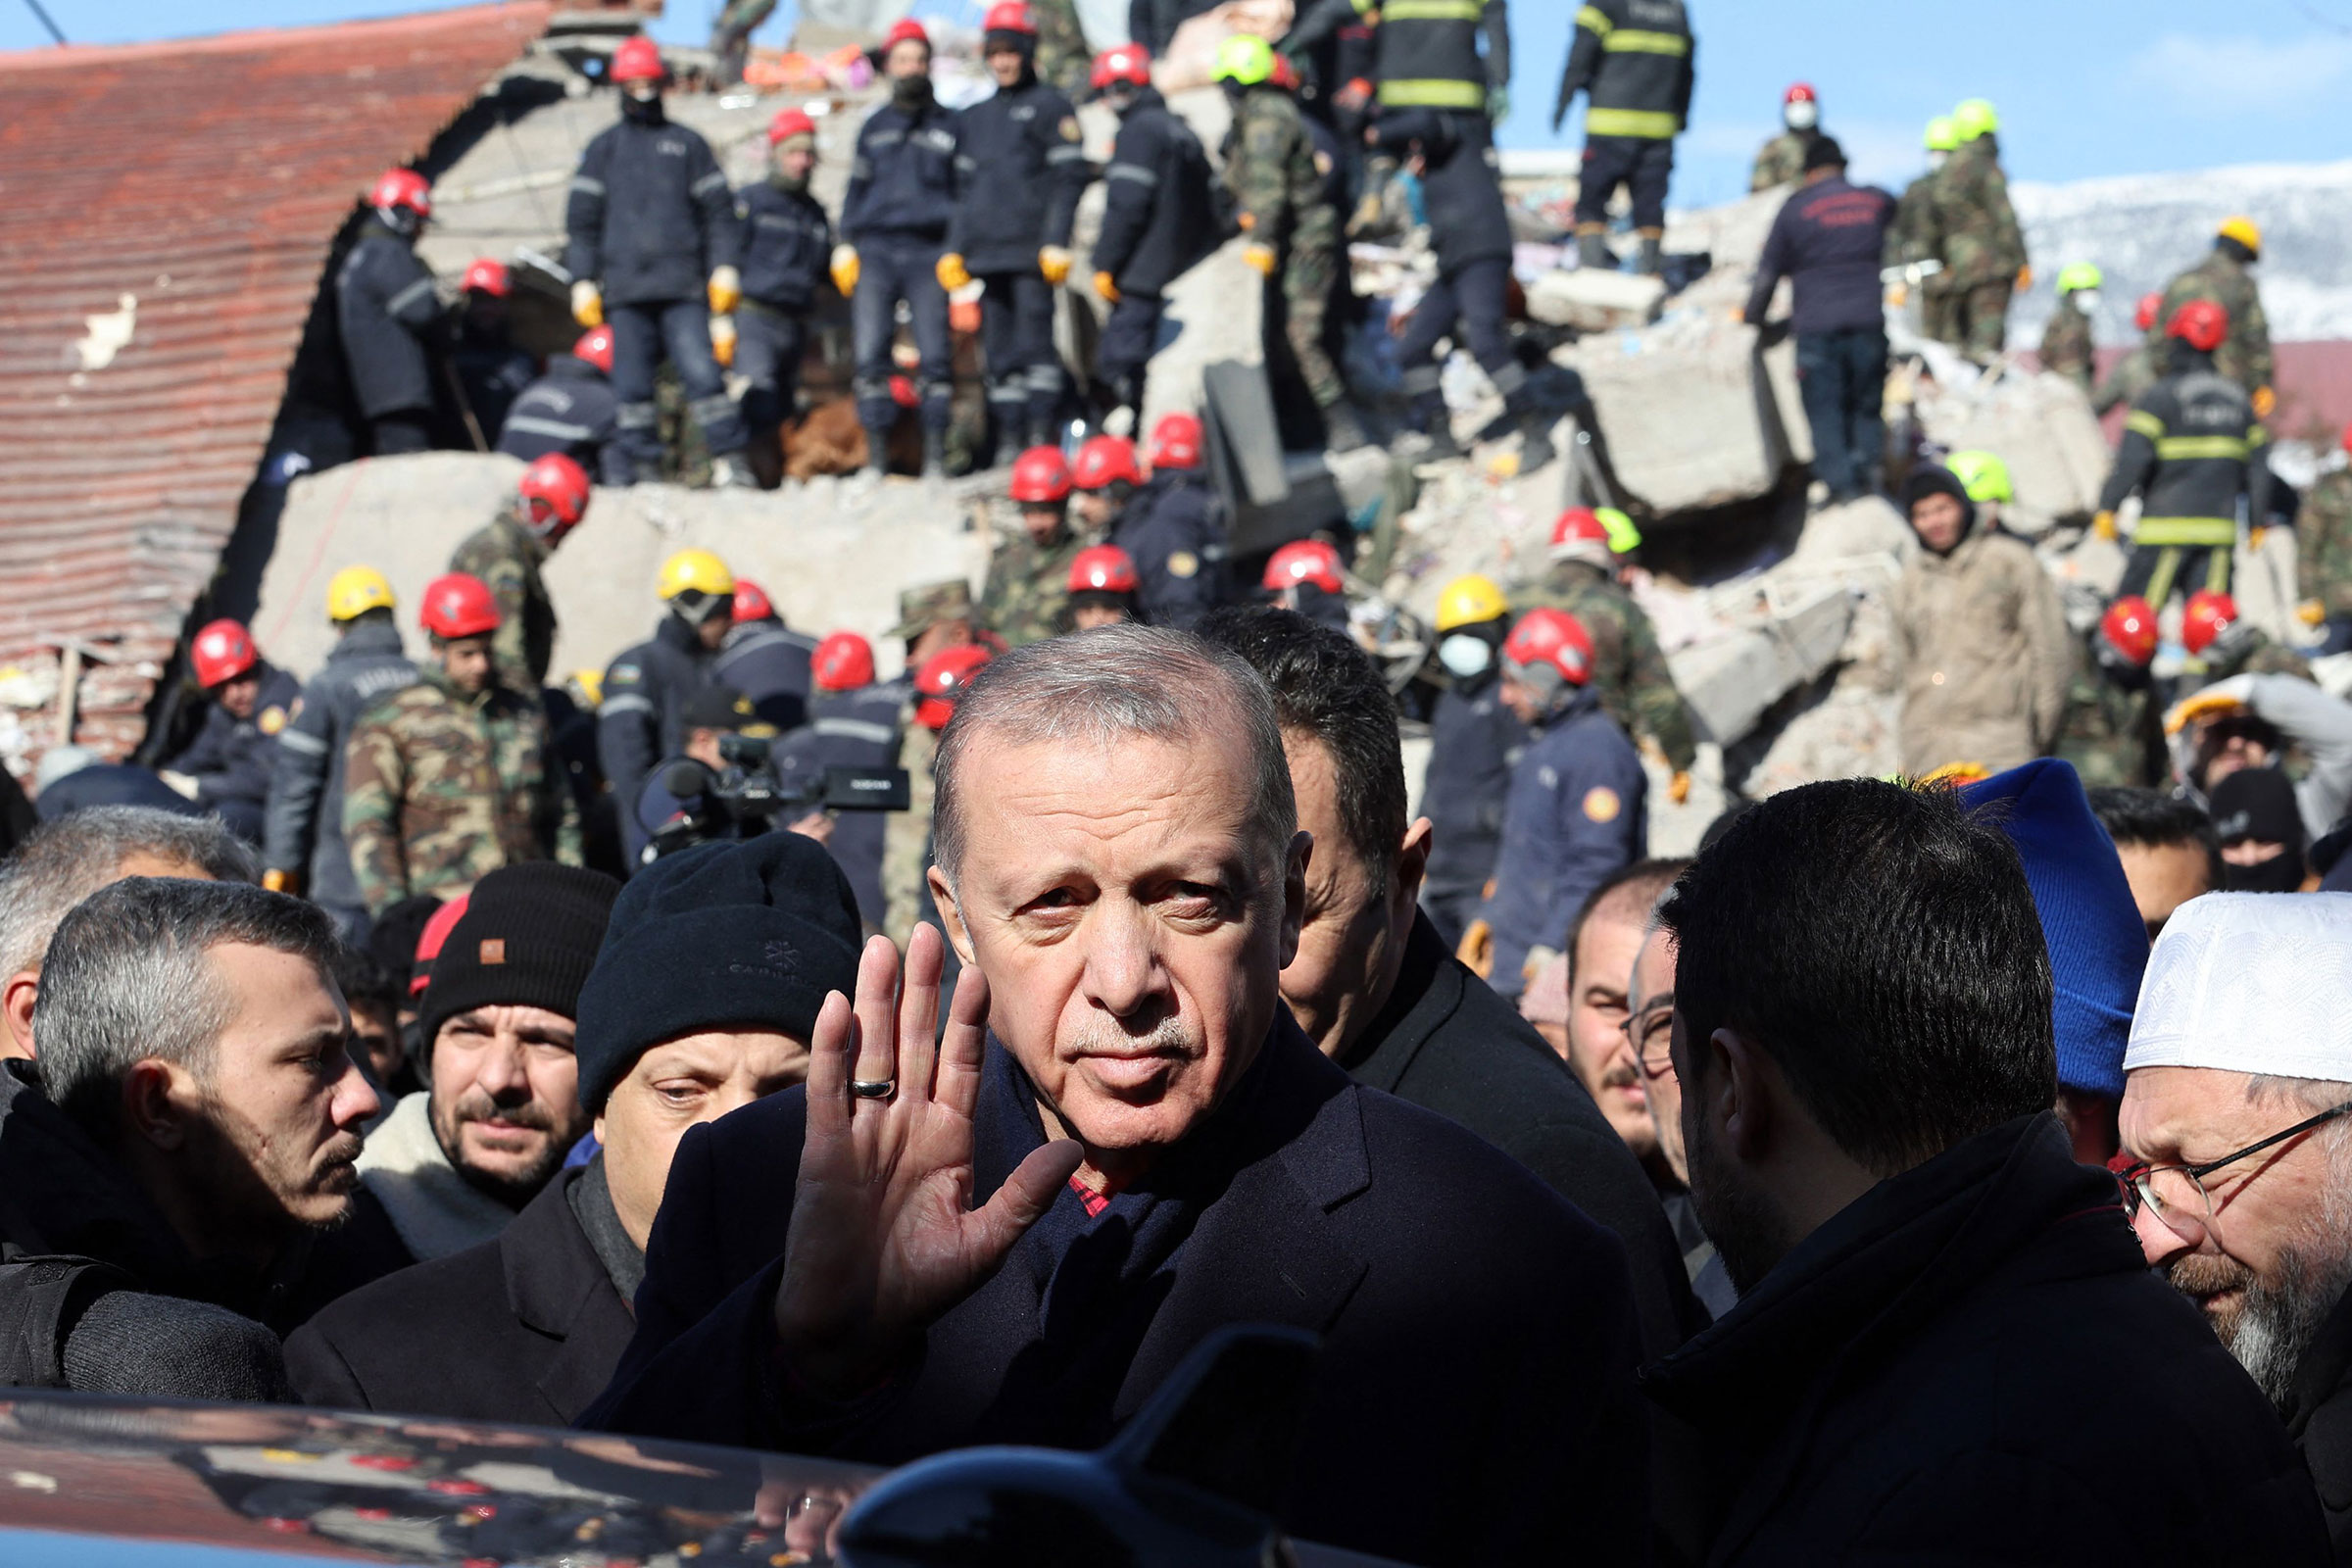 Tổng thống Thổ Nhĩ Kỳ Recep Tayyip Erdogan tham quan khu vực các tòa nhà bị phá hủy trong chuyến thăm thành phố Kahramanmaras ở đông nam Thổ Nhĩ Kỳ, hai ngày sau trận động đất nghiêm trọng tấn công khu vực vào ngày 8 tháng 2 năm 2023. (Adem Atlan—AFP/Getty Images)